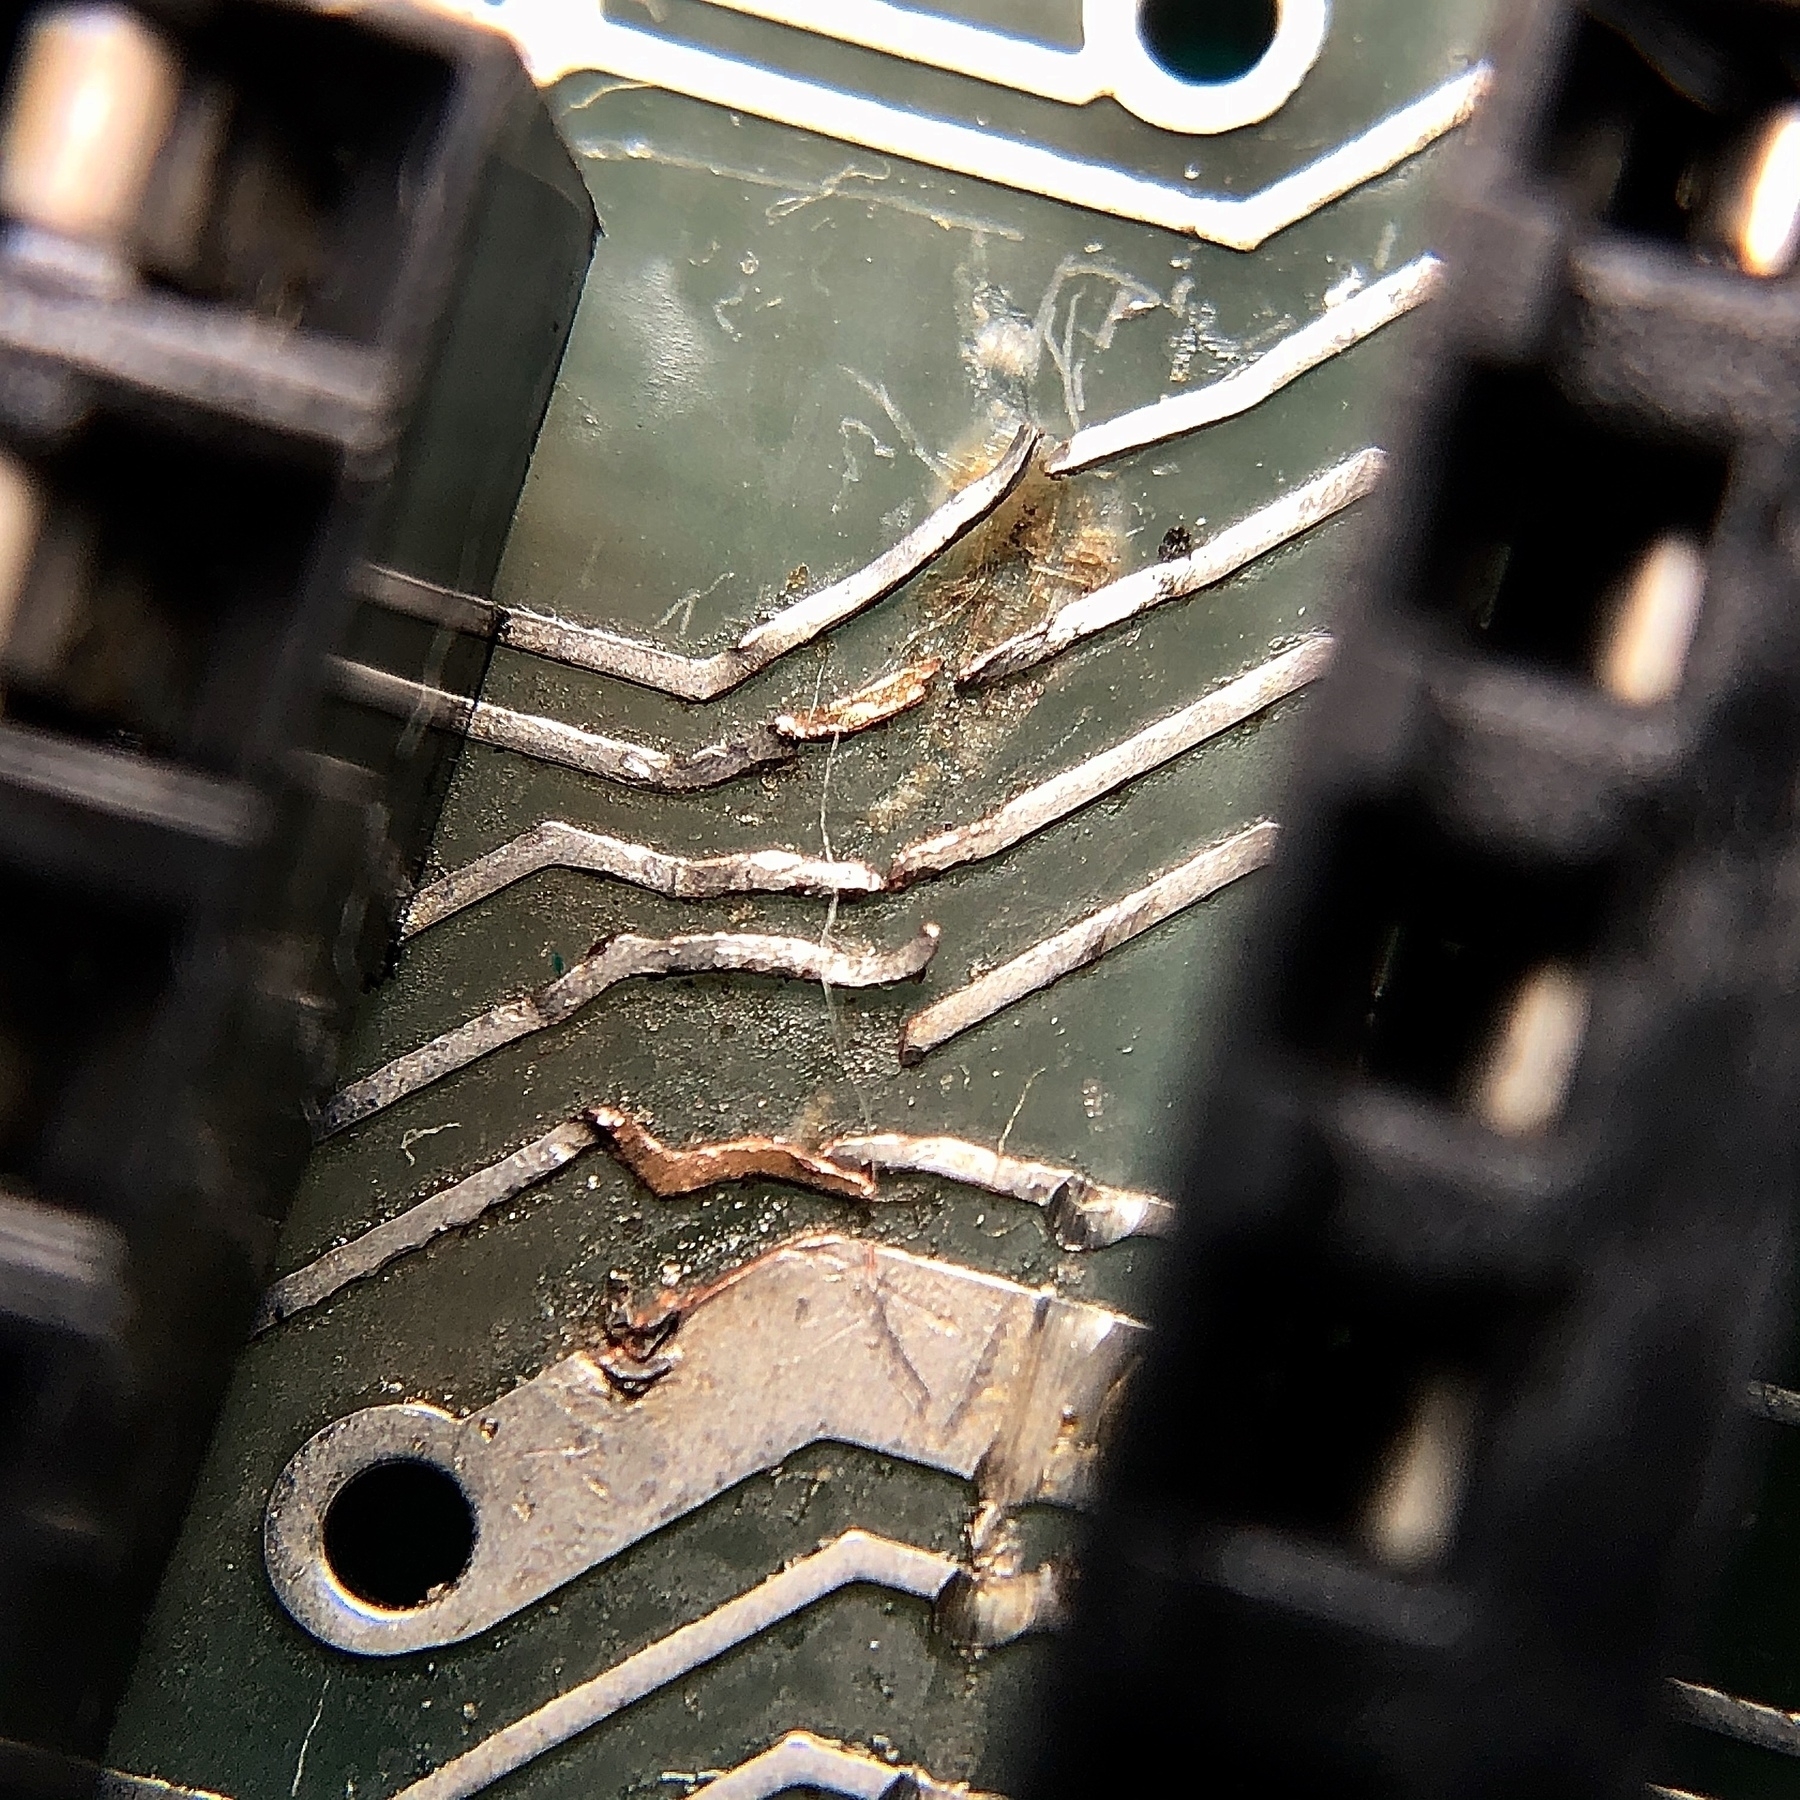 closeup of damaged electrical circuits